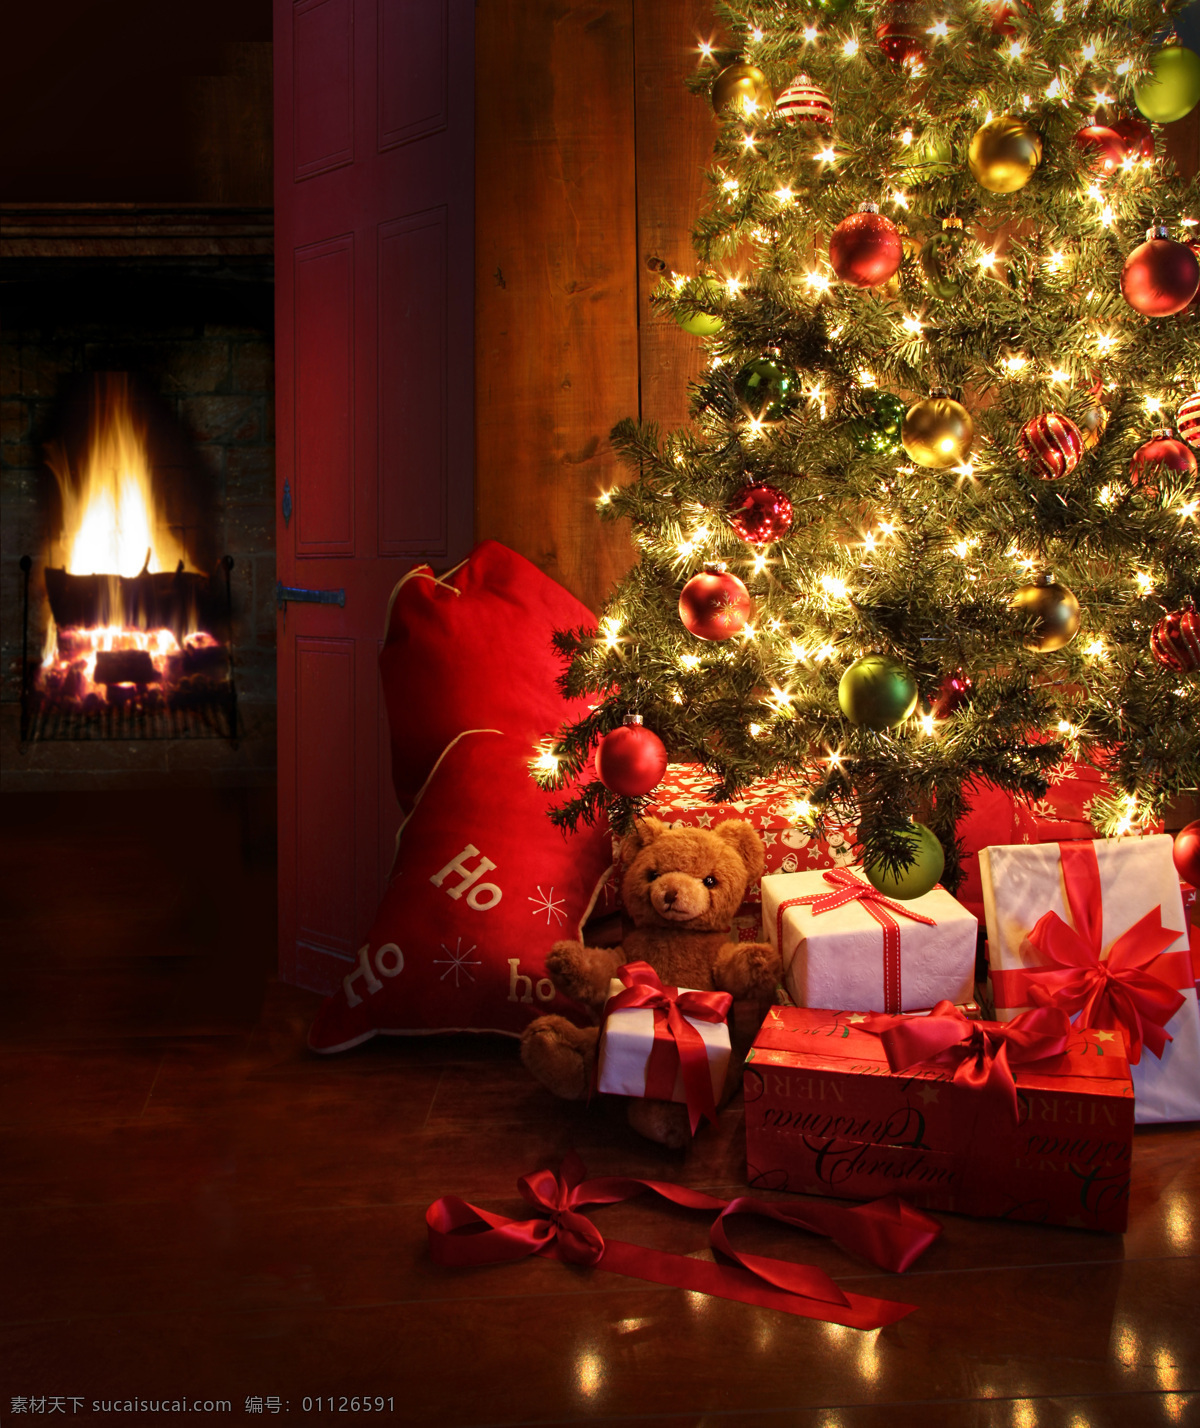 圣诞礼品素材 礼品 礼物 礼盒 圣诞礼物 节日 喜庆 礼包 圣诞球 彩球 圣诞树 壁炉 梦幻光斑 节日庆典 圣诞素材 生活百科 黑色